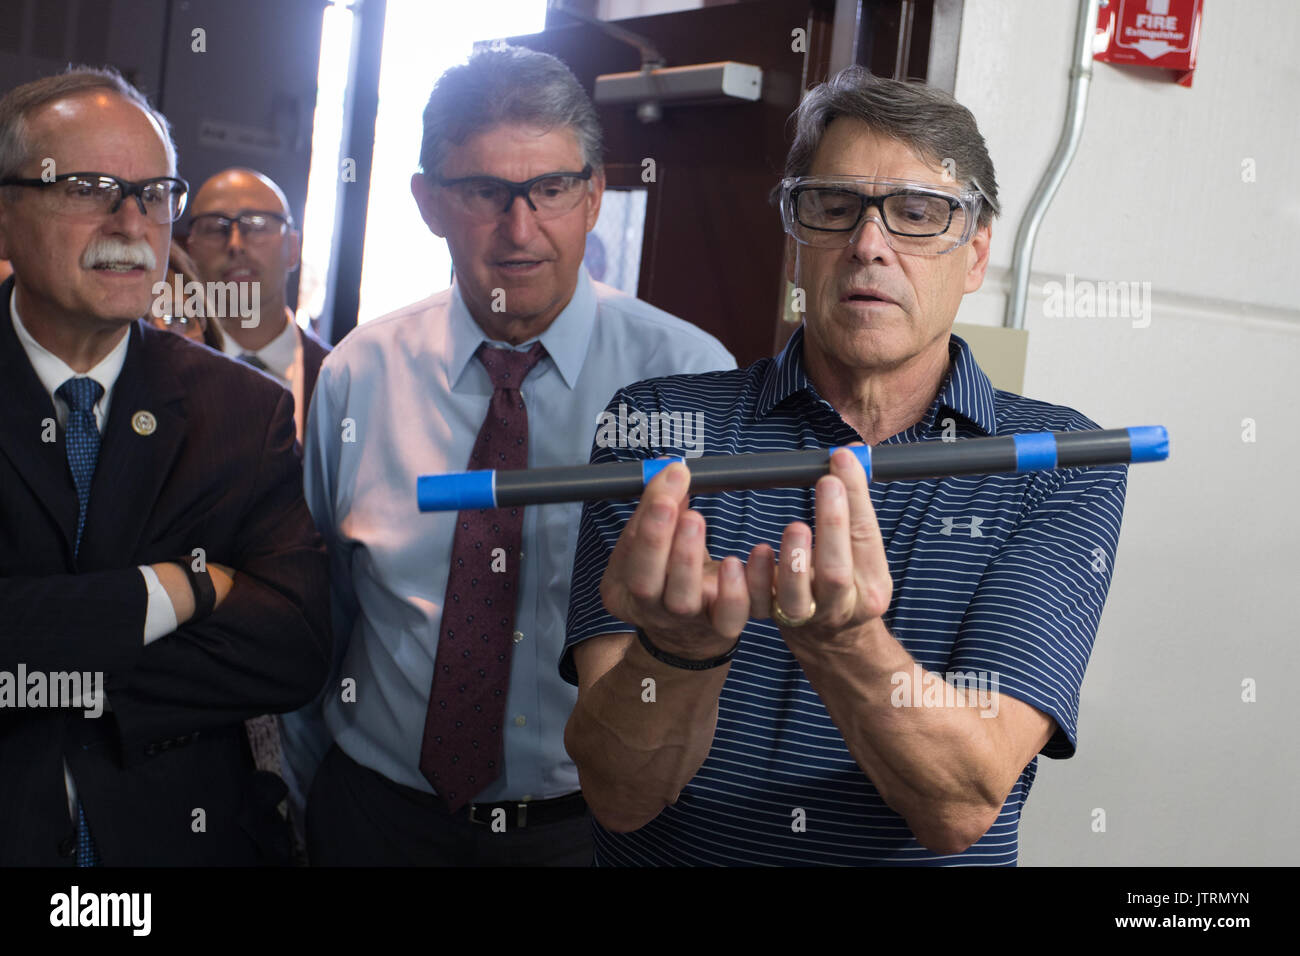 Secretario de Energía de los Estados Unidos, Rick Perry, a la derecha, y el Senador Joe Manchin, centro, durante un recorrido por el Laboratorio Nacional de Tecnología de Energía de Julio 6, 2017 en Pittsburgh, Pennsylvania. Foto de stock